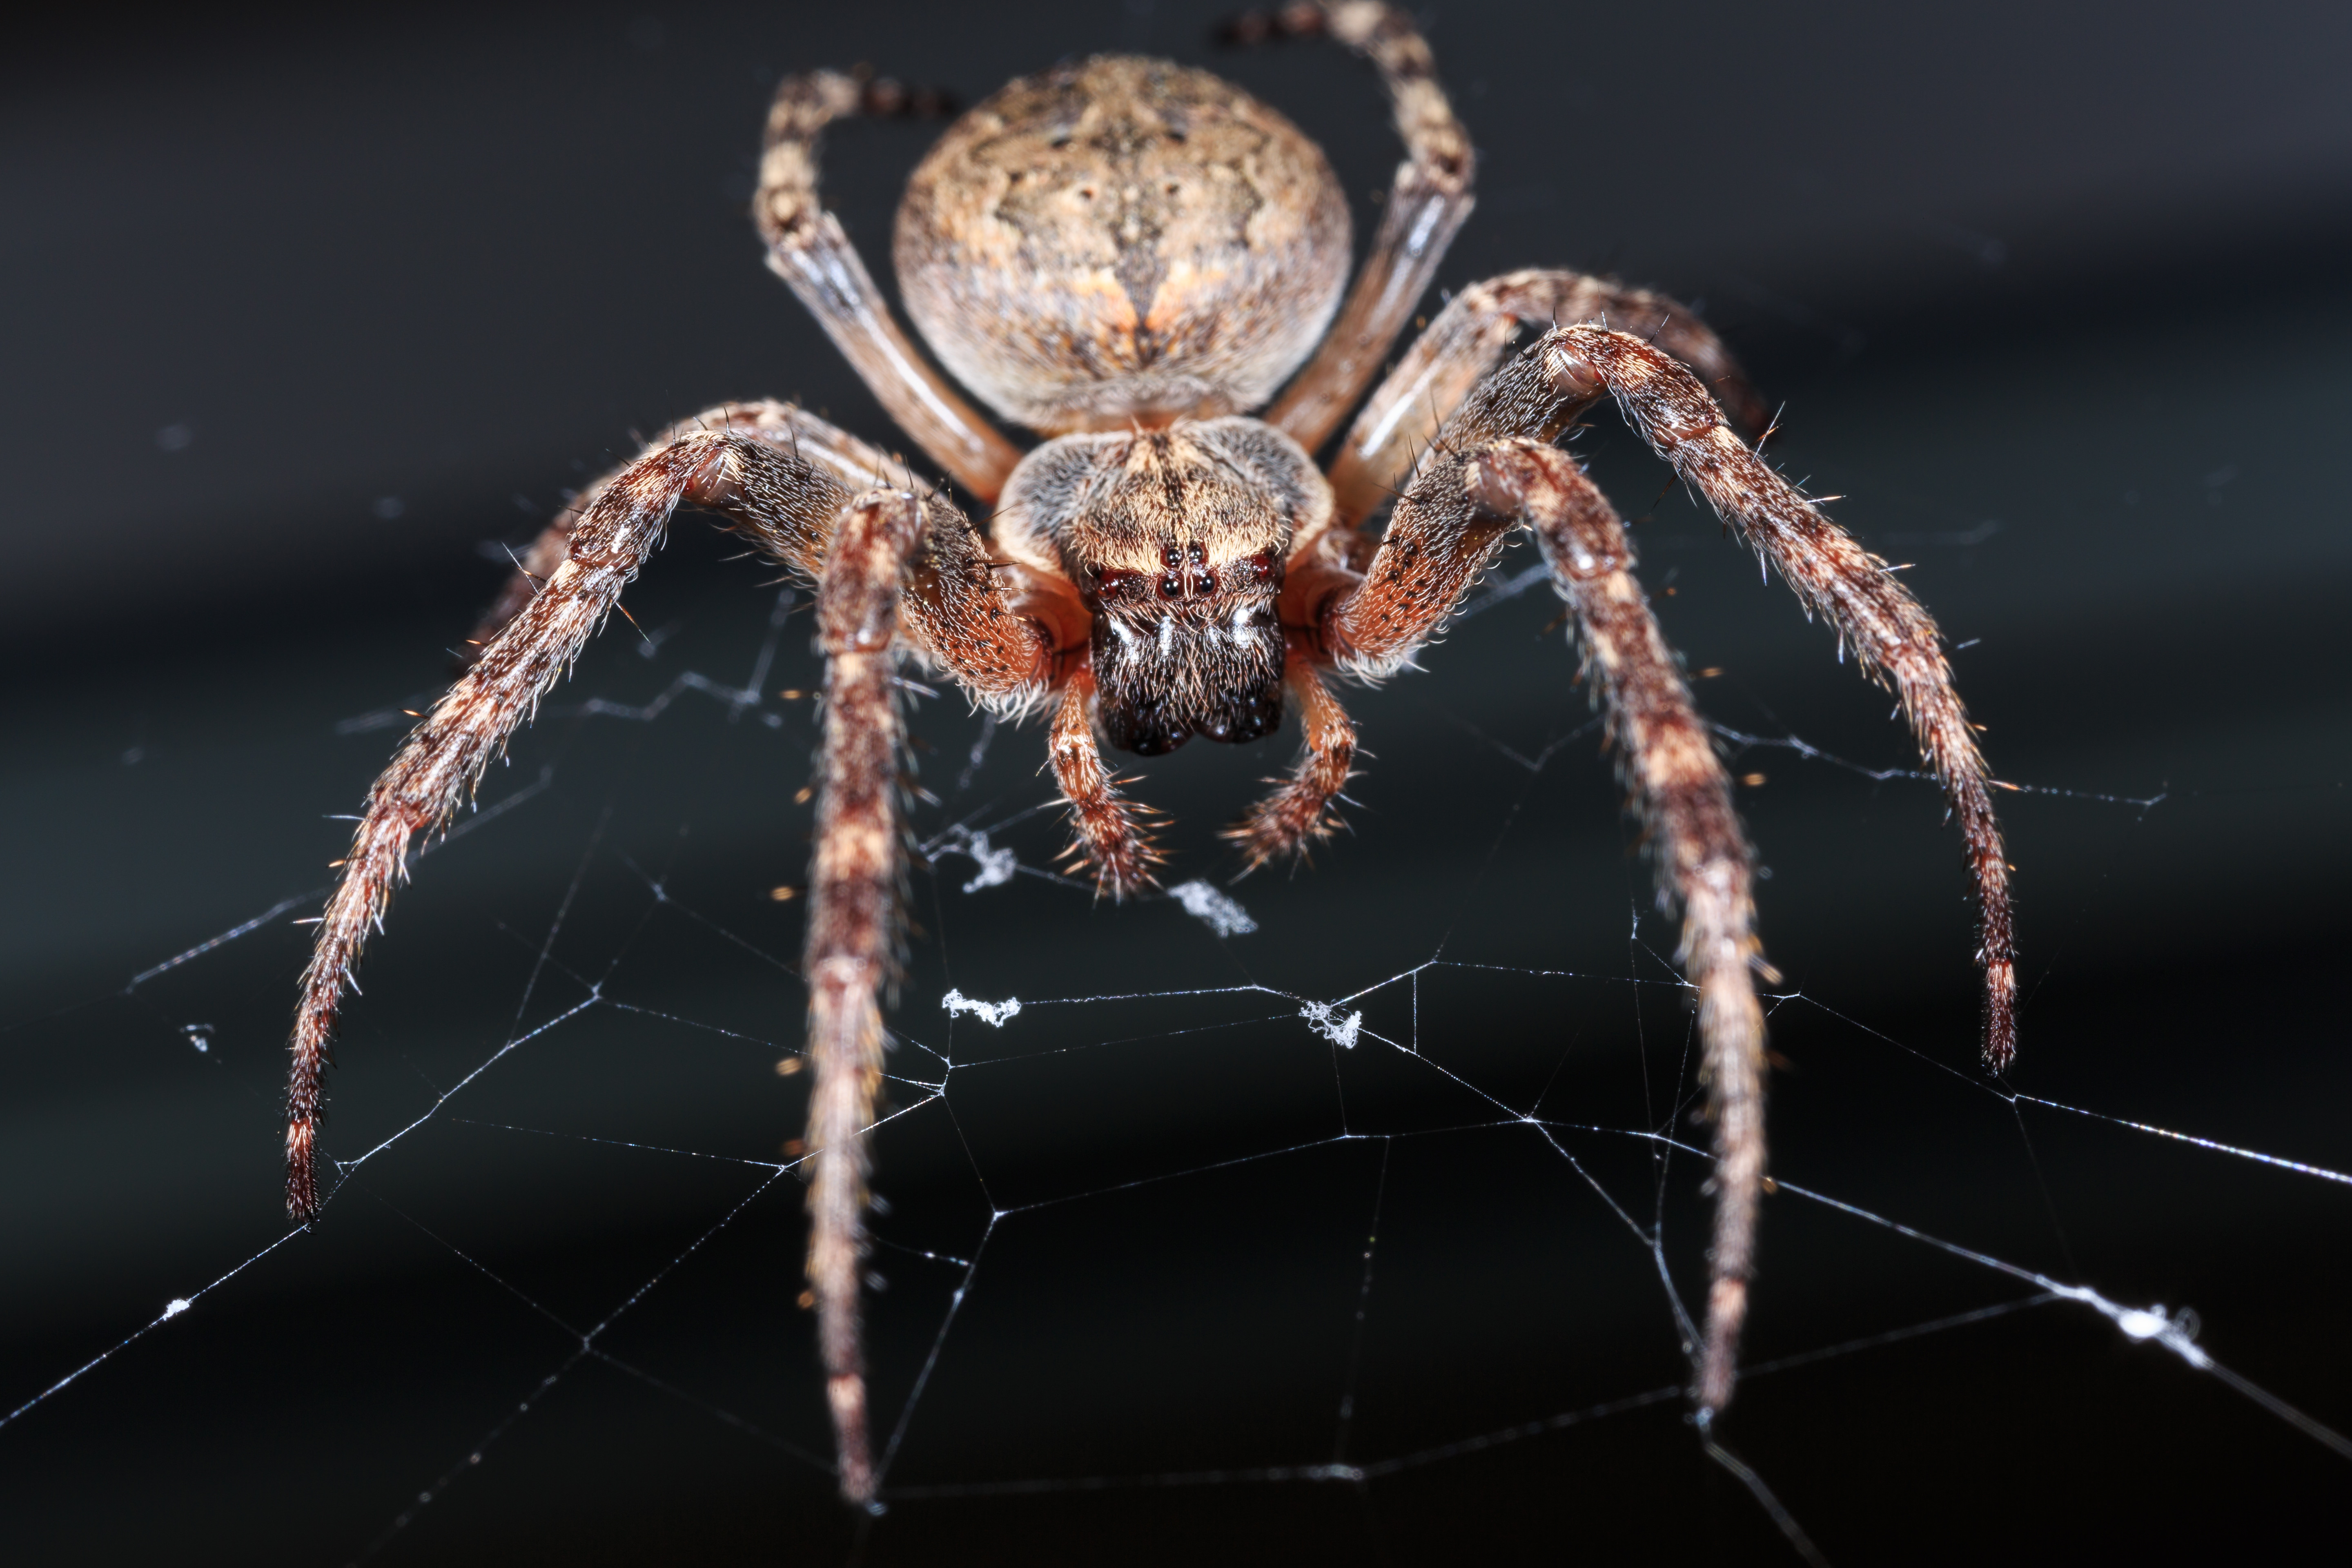 Описание и фото паука крестоносца